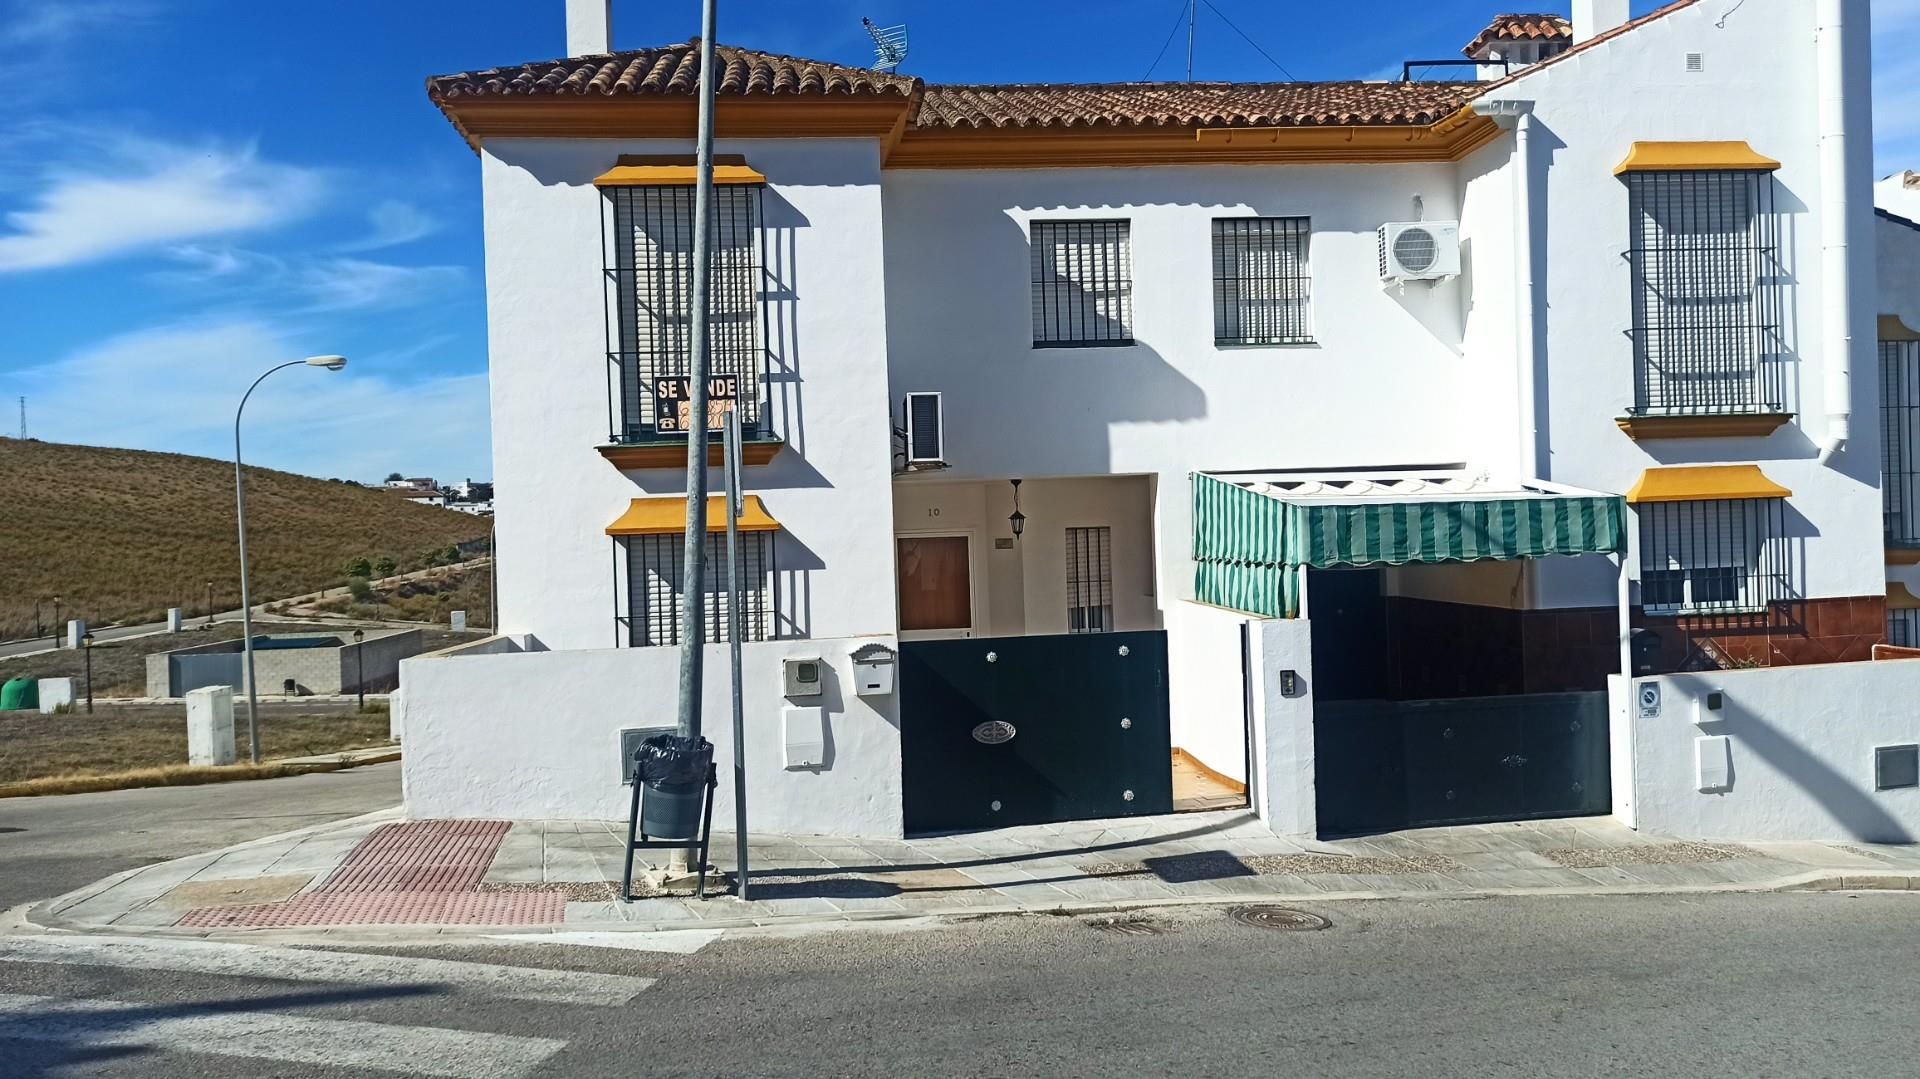 17 Viviendas y casas en venta en San José del Valle | fotocasa